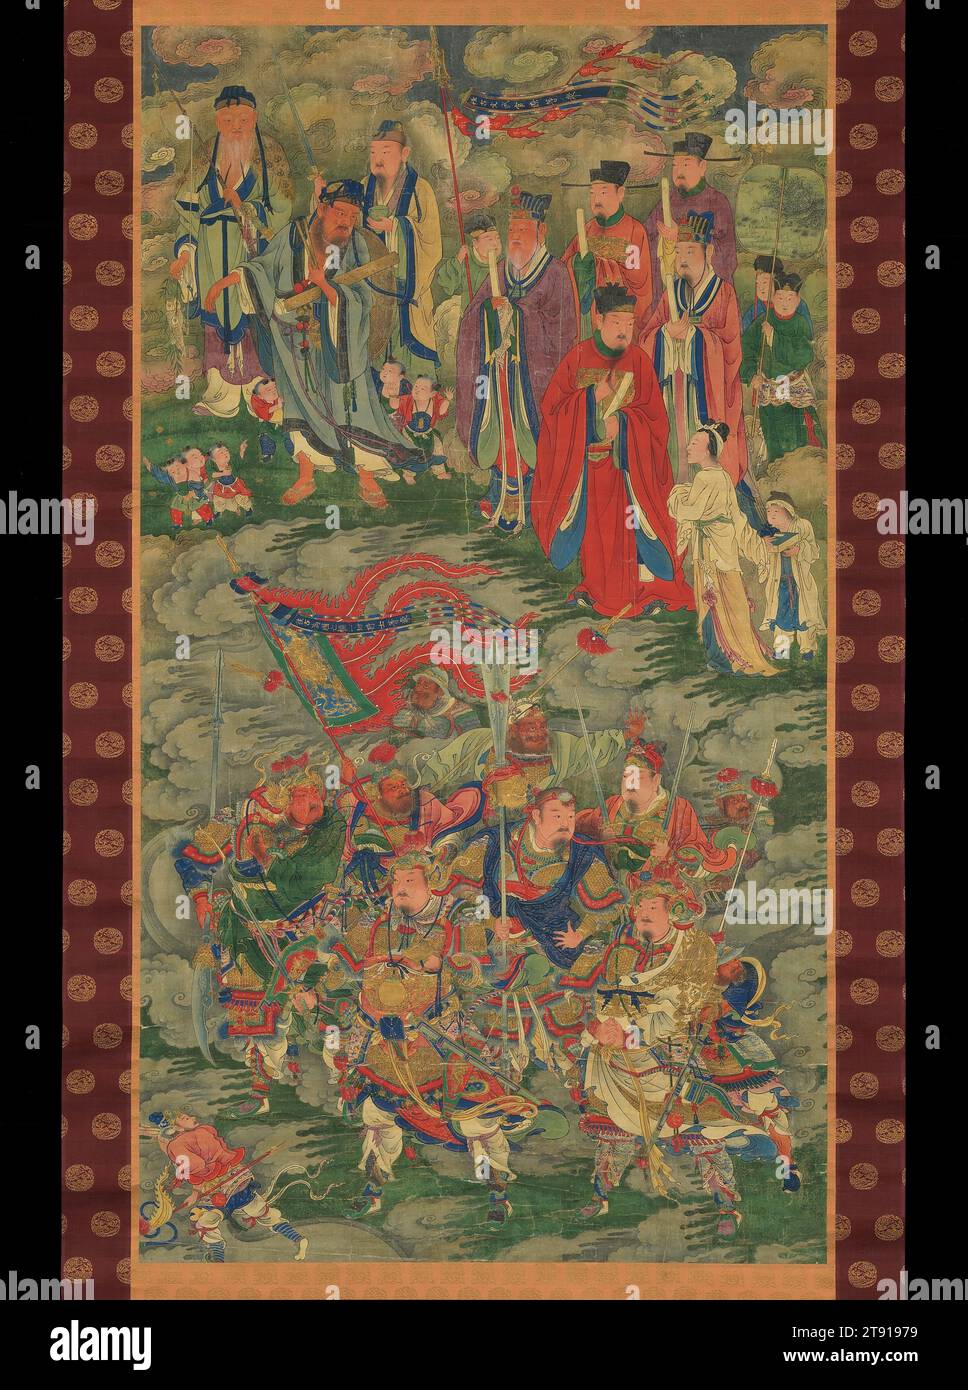 Generali che morirono per il loro Paese e funzionari dei tempi passati, 1500 c., 53 3/16 x 29 7/16 pollici. (135,1 x 74,8 cm) (immagine)94 3/4 x 39 1/8" (240,7 x 99,4 cm) (montatura, con rullo), inchiostro e colore su seta; rotolo appeso, Cina, XV-XVI secolo, questo rotolo colorato era una volta parte di un insieme di dipinti "rituali Terra d'acqua" (Shuilu) utilizzati nei riti mortuari buddisti che onorano le anime dei morti. Due gruppi di figure sono identificati da iscrizioni scritte in oro su striscioni che volano sopra la testa. Le otto figure che indossano un'armatura nella parte inferiore del dipinto sono generali che morirono Foto Stock